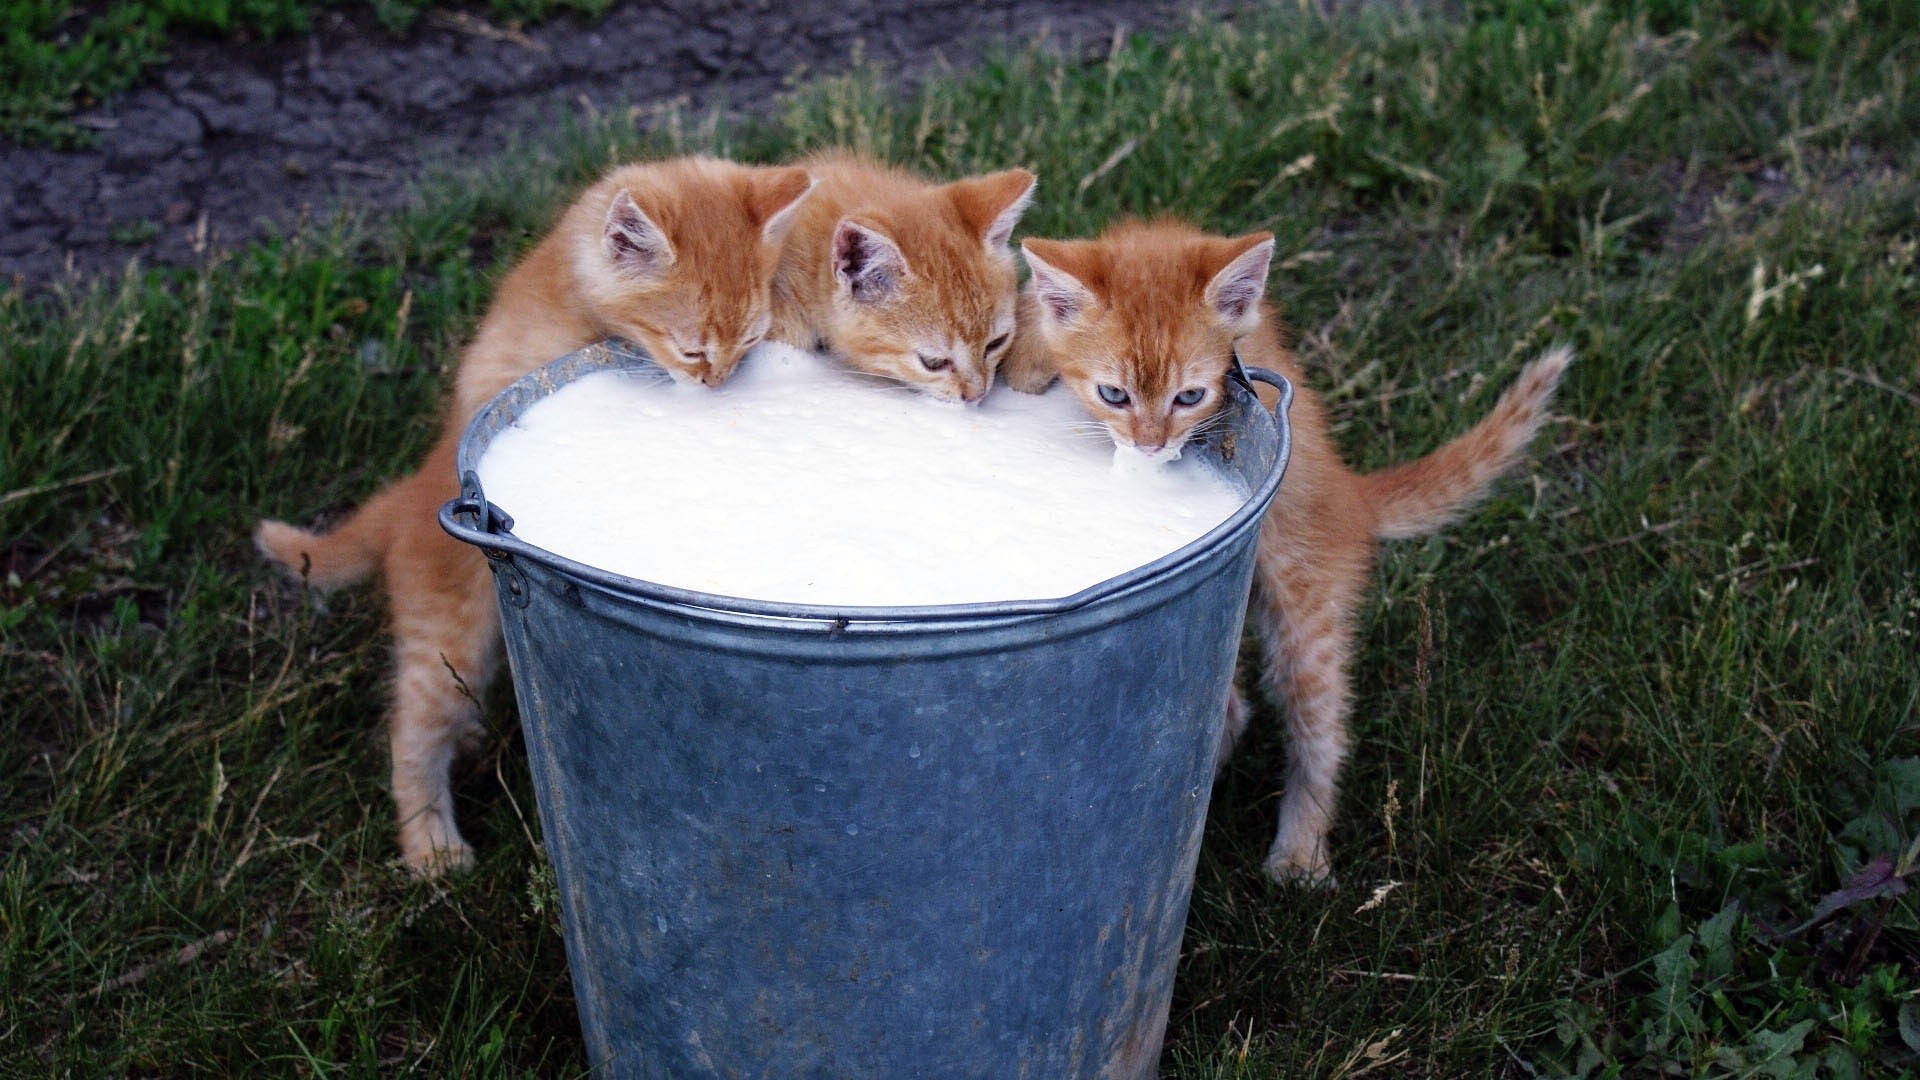 Download Wallpaper 1920x1080 Kittens, bucket, Milk, Food, Drink ...